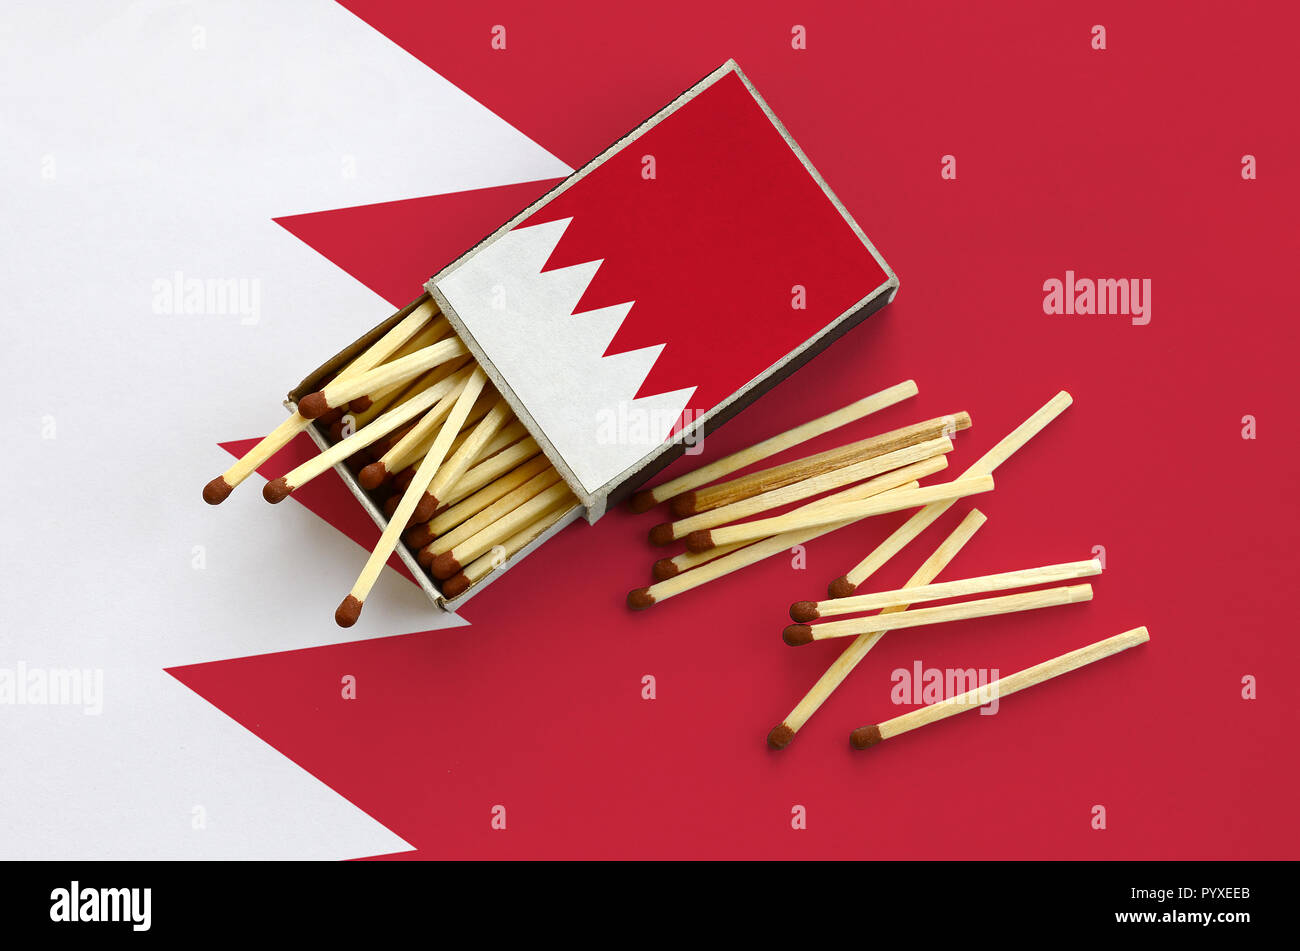 Drapeau de Bahreïn est indiqué sur une boîte d'allumettes, à partir de laquelle plusieurs matches de l'automne et se trouve sur un grand drapeau. Banque D'Images